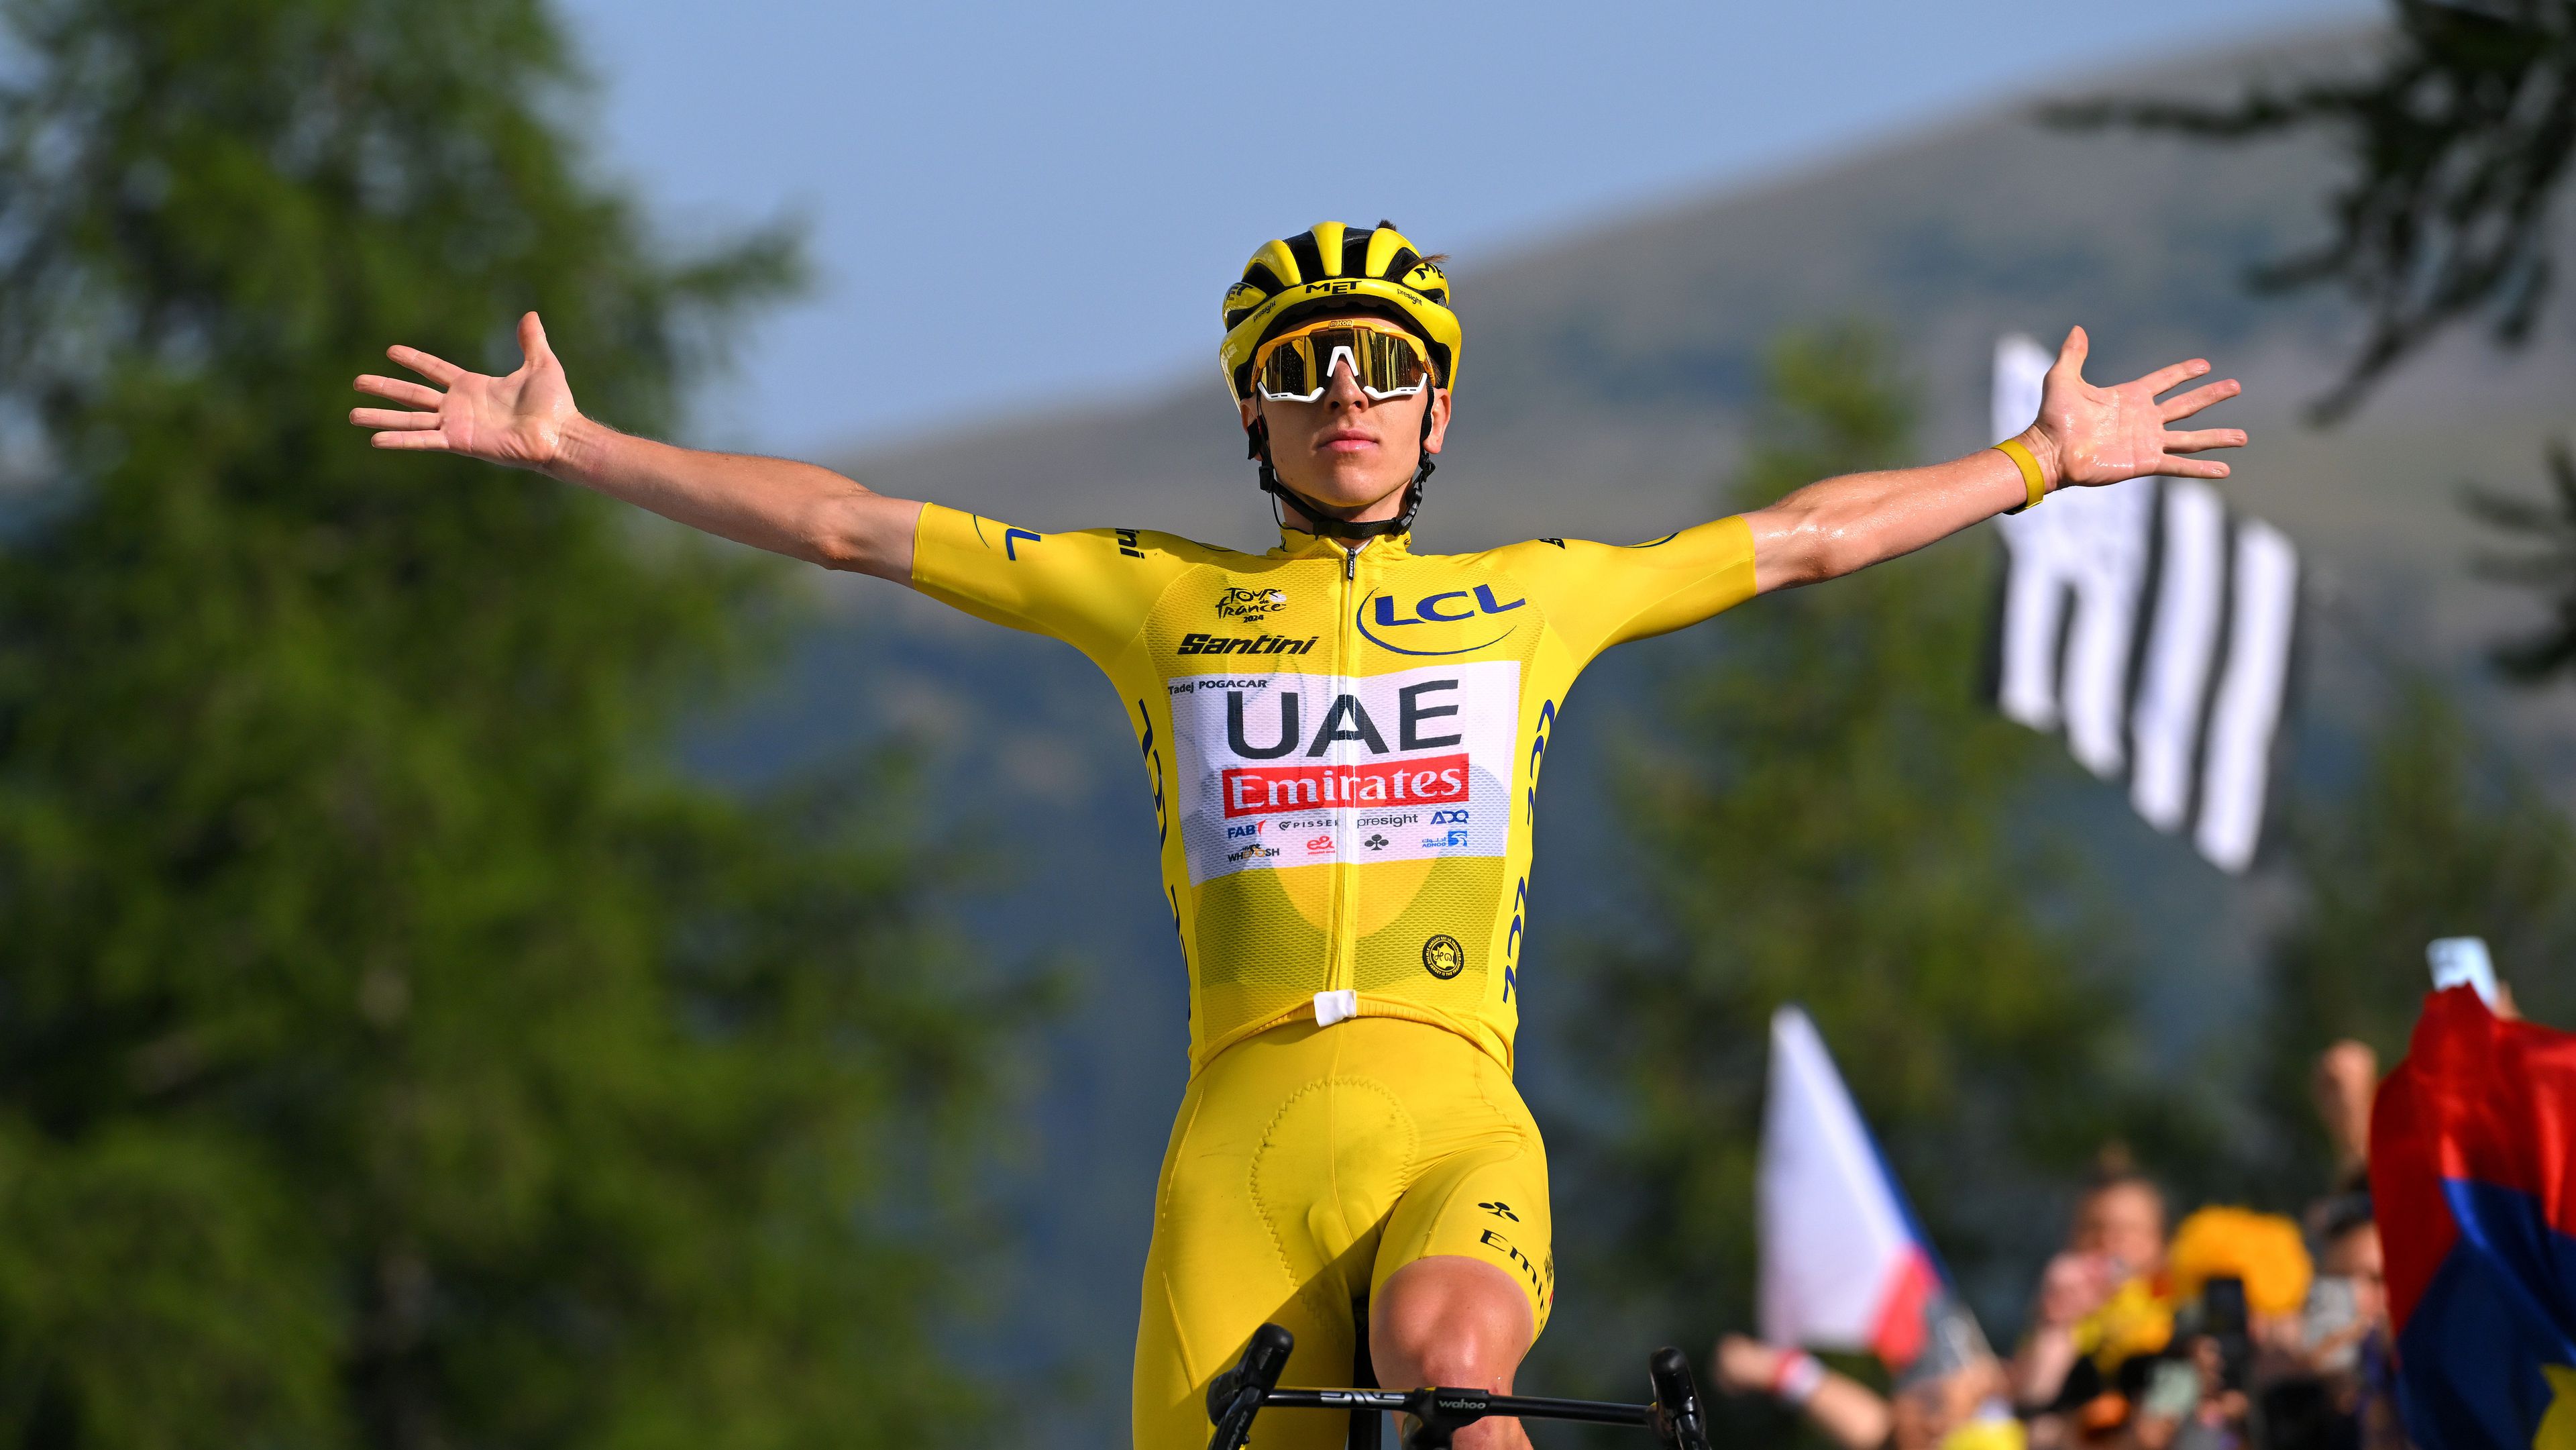 Huszonhat éve nem látott bravúr: Pogacar a Giro után a Tourt is megnyerte